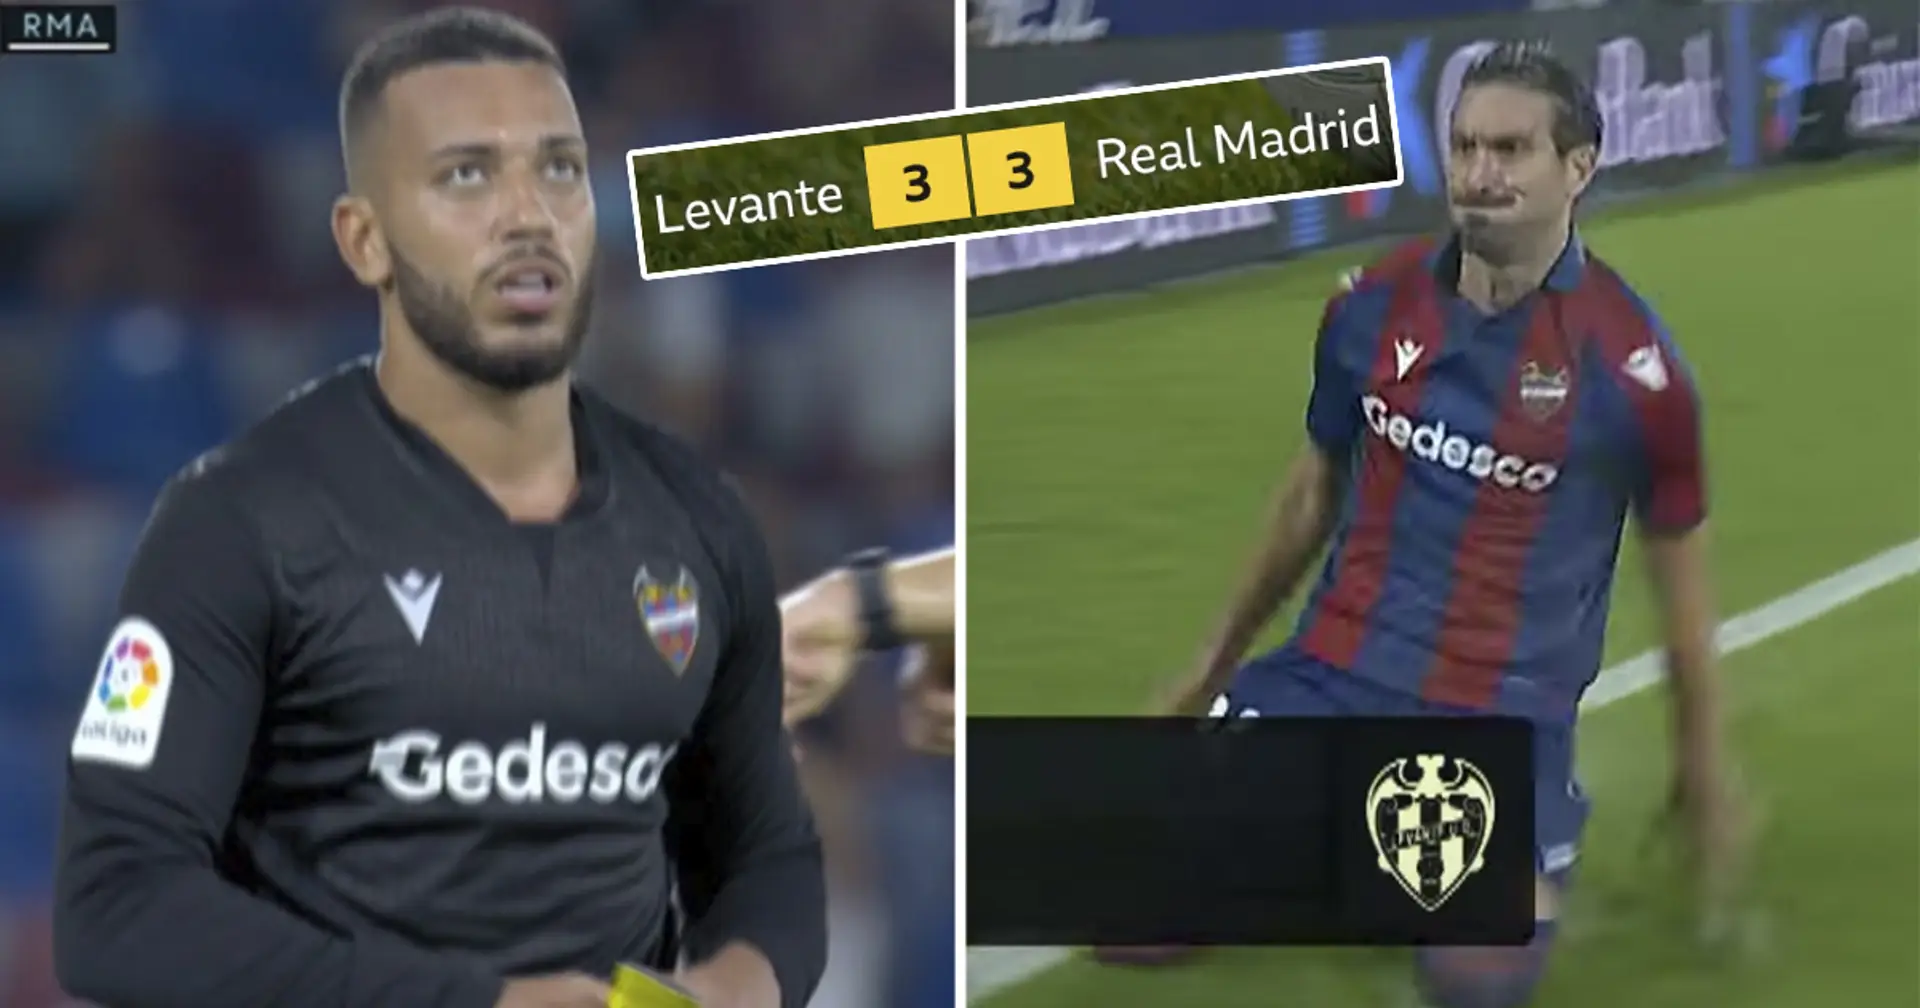 Le Real Madrid perd des points malgré un match contre Levante à 10 et un joueur de champ en tant que gardien de but pendant 10 minutes